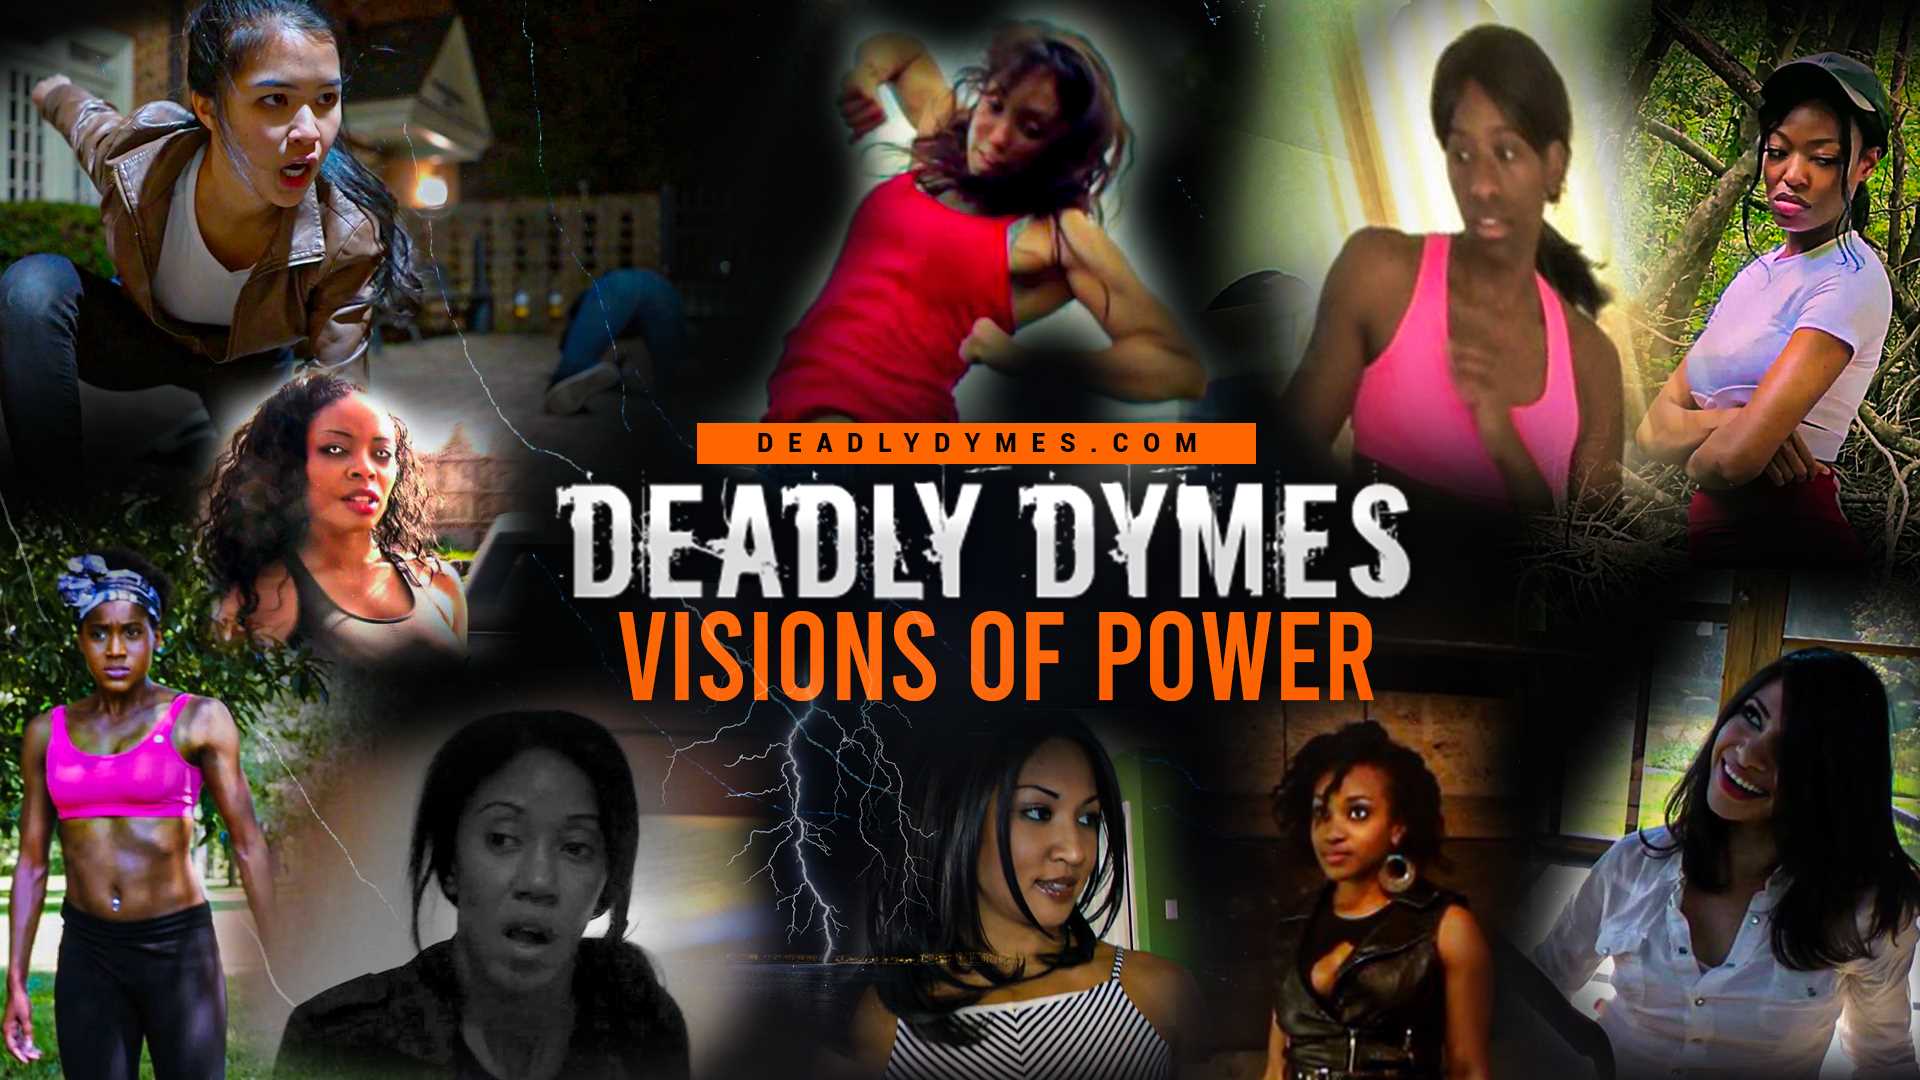 DeadlyDymes | Deadly Dymes | DEADLYDYMES.COM